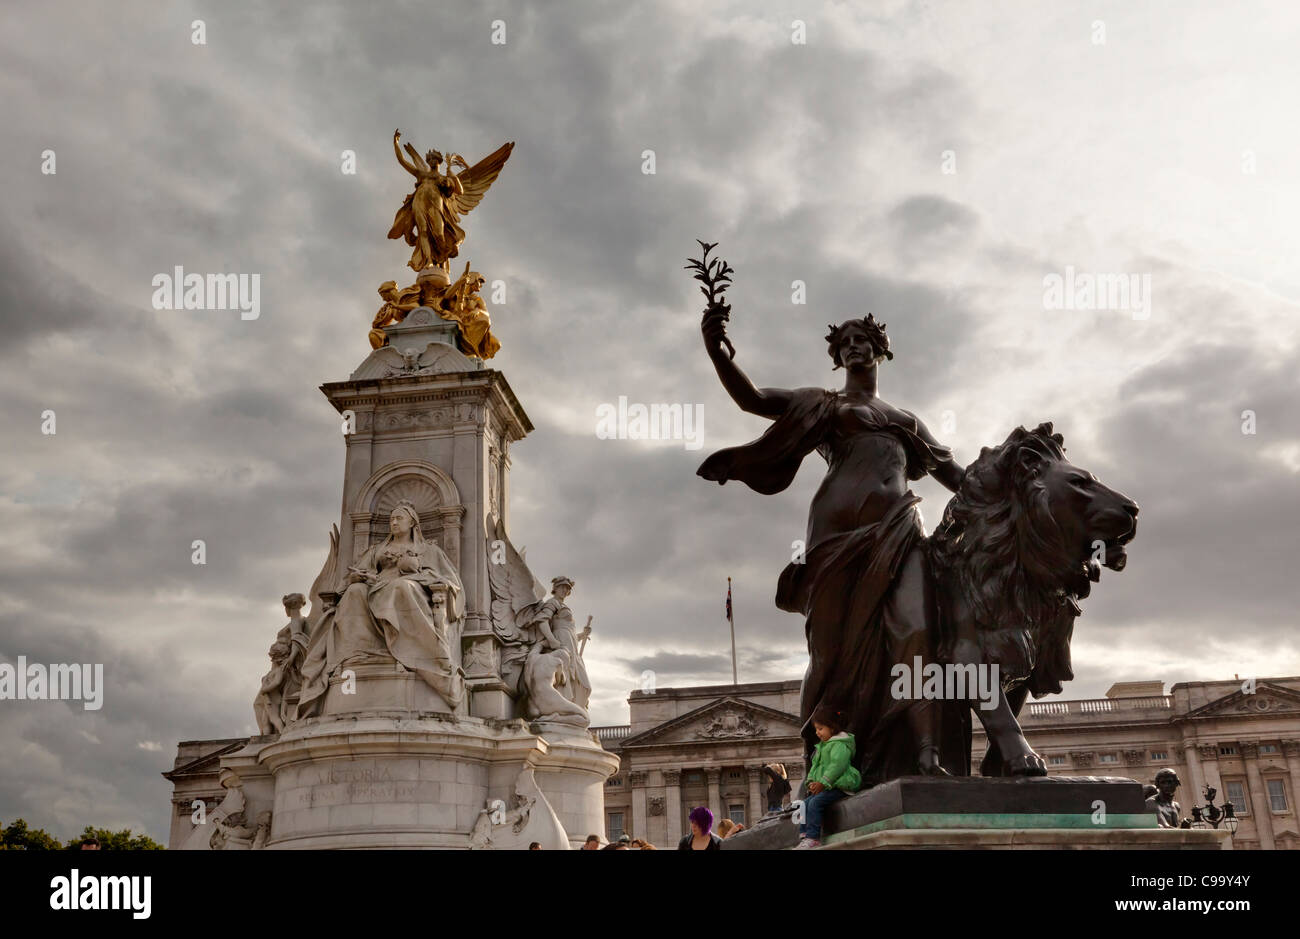 La regina Victoria Memorial con scuro patinato statua in bronzo di fronte a Buckingham Palace, St James's, London, Regno Unito Foto Stock